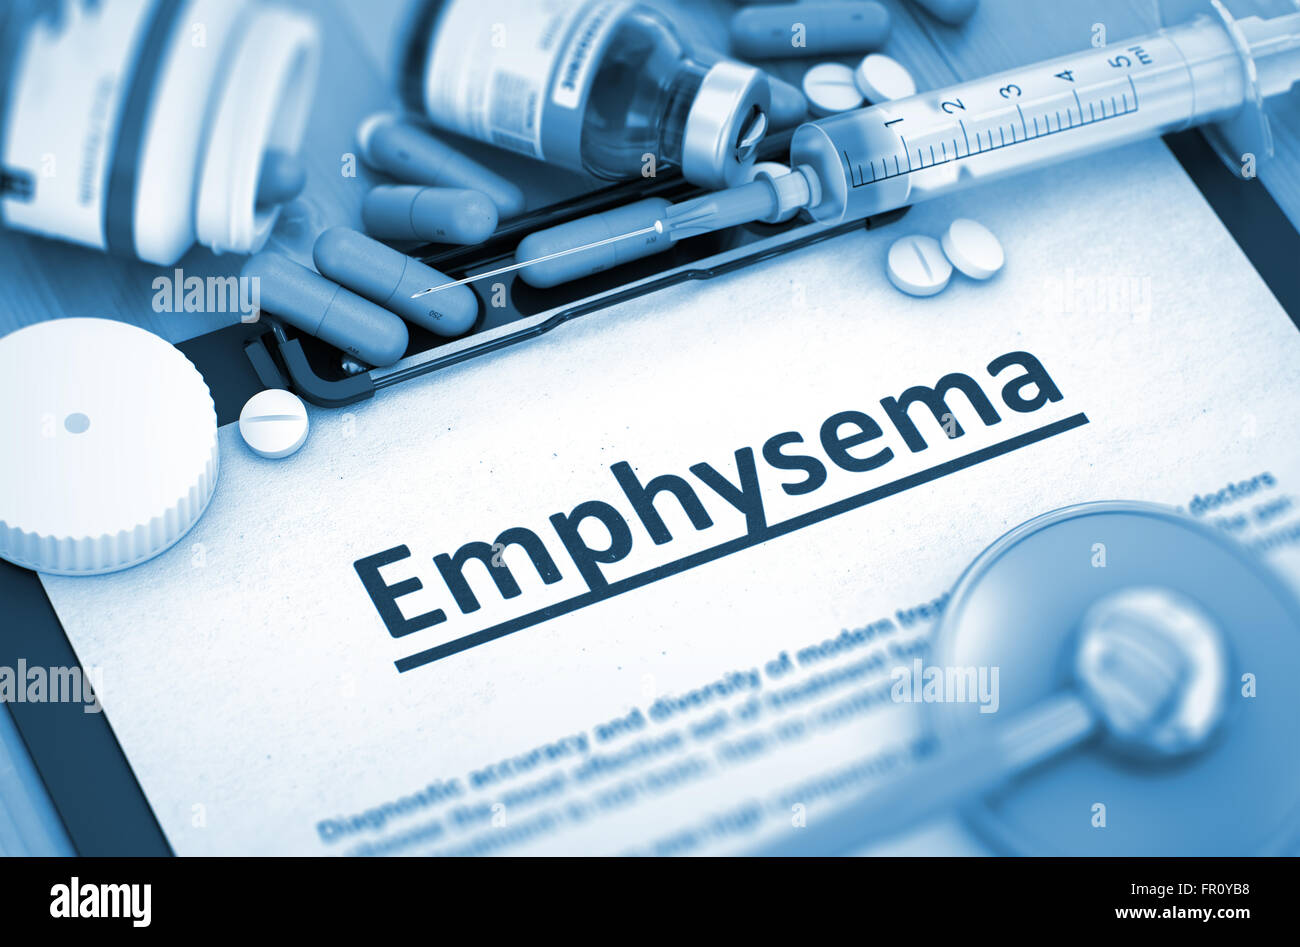 Emphysema Diagnosis. Medical Concept. Stock Photo